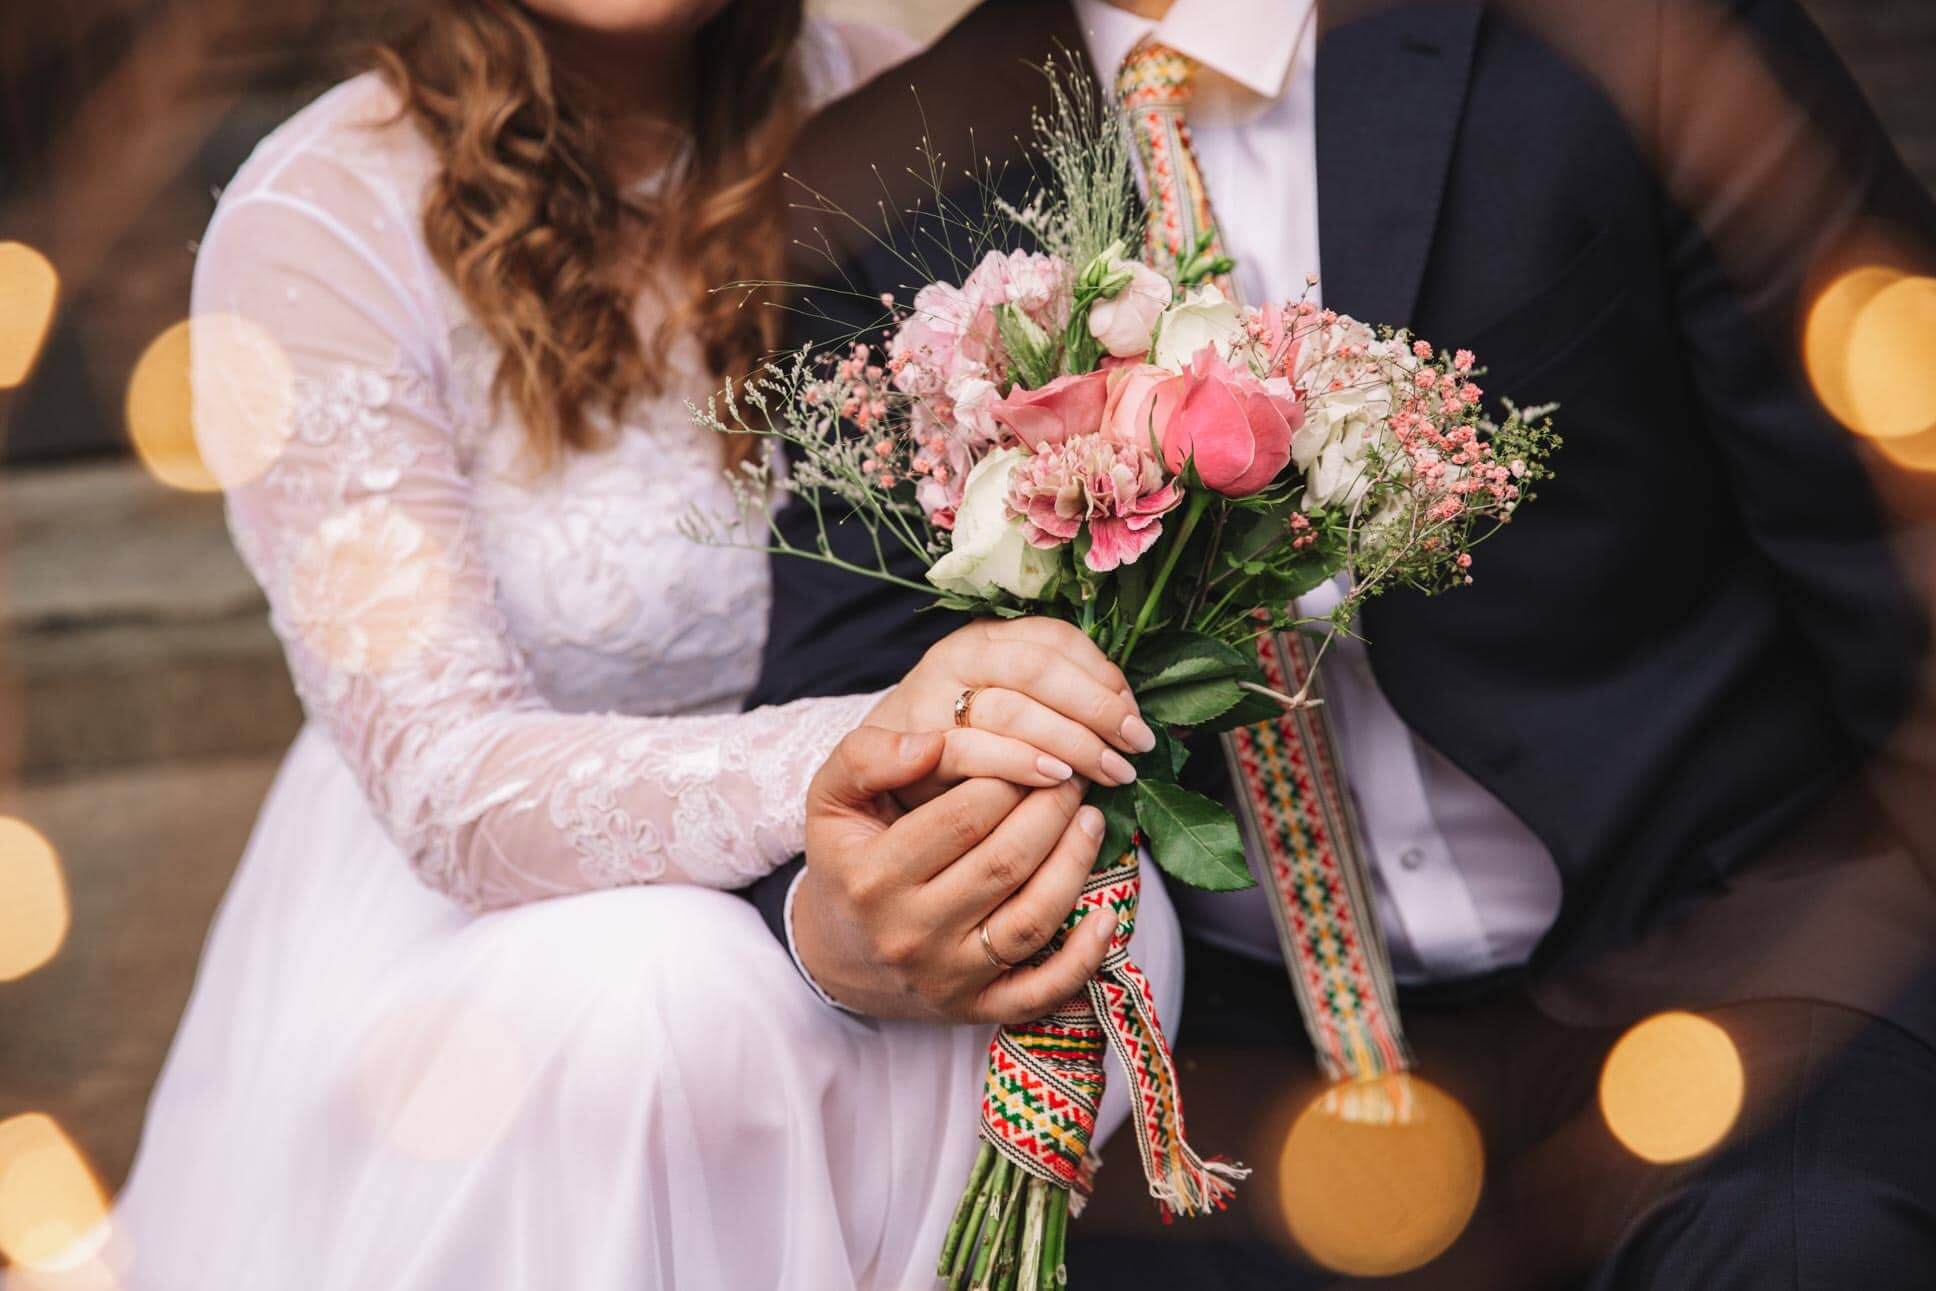 a close up of a wedding bouquet